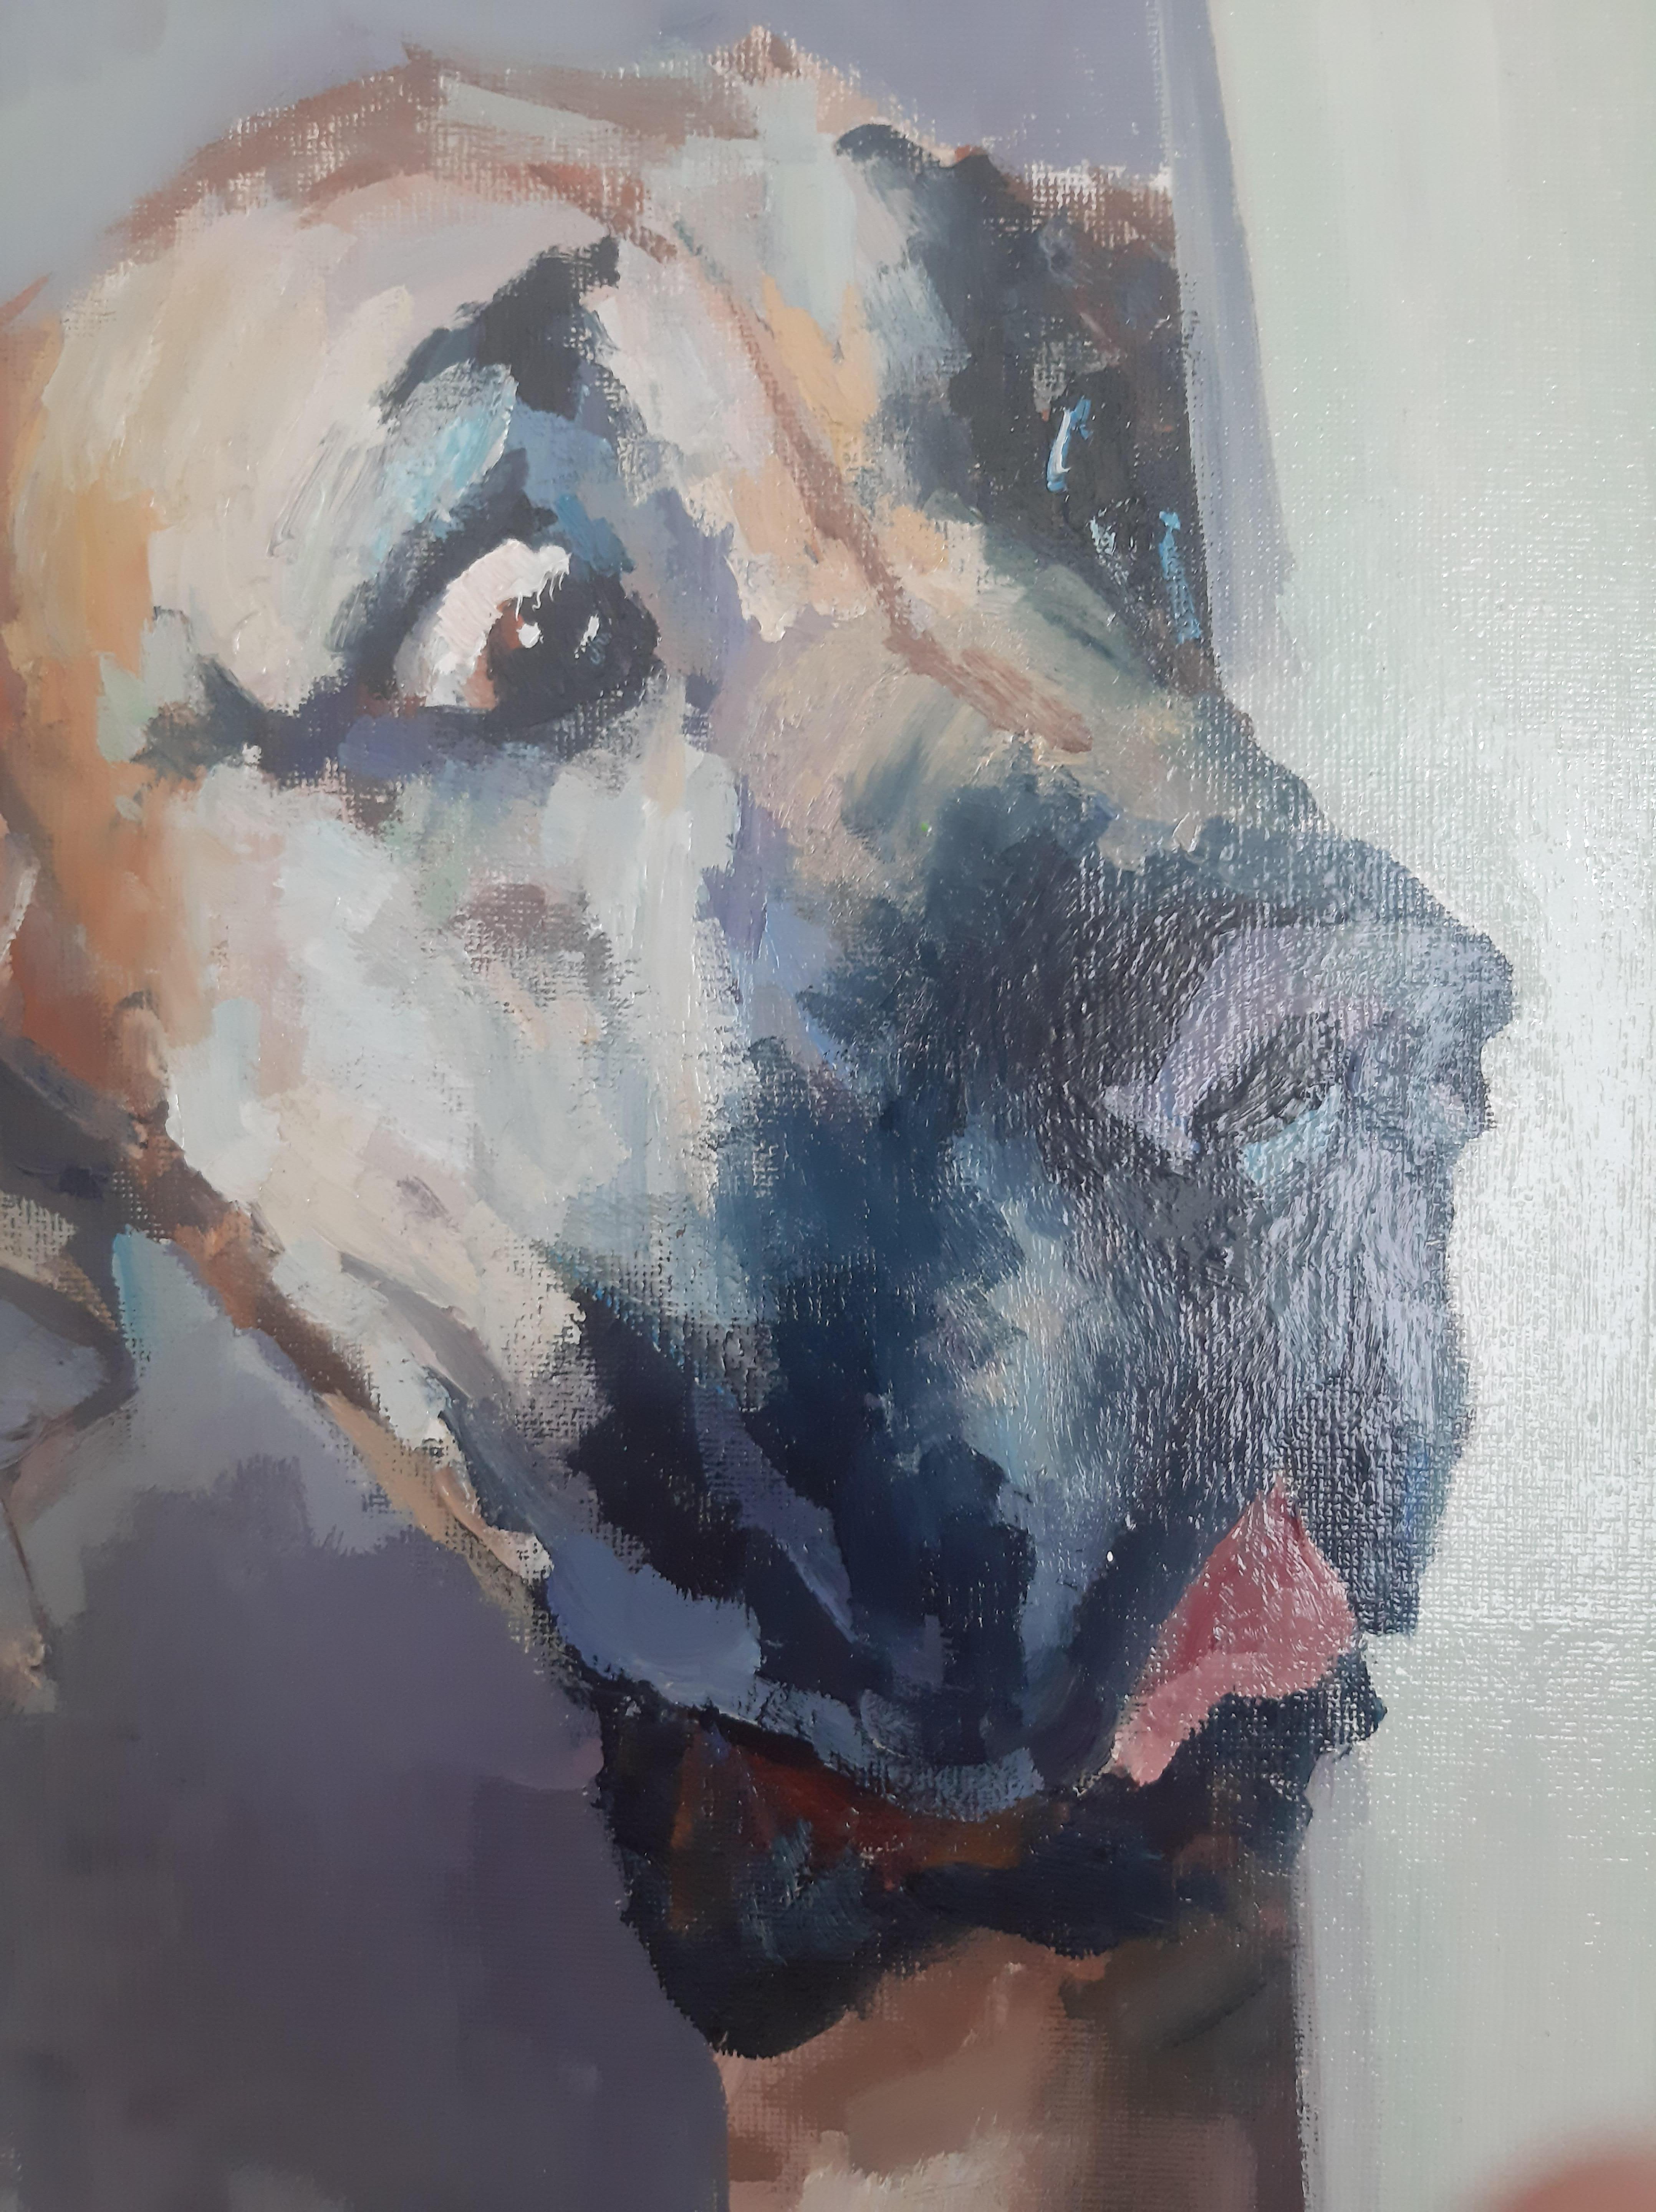 Dans ce tableau représentant le portrait d'un chien, nous voyons un regard concentré qui semble respirer de vives émotions. Le visage de l'animal exprime un véritable étonnement et une grande perplexité. Le regard est empreint d'un intérêt profond,